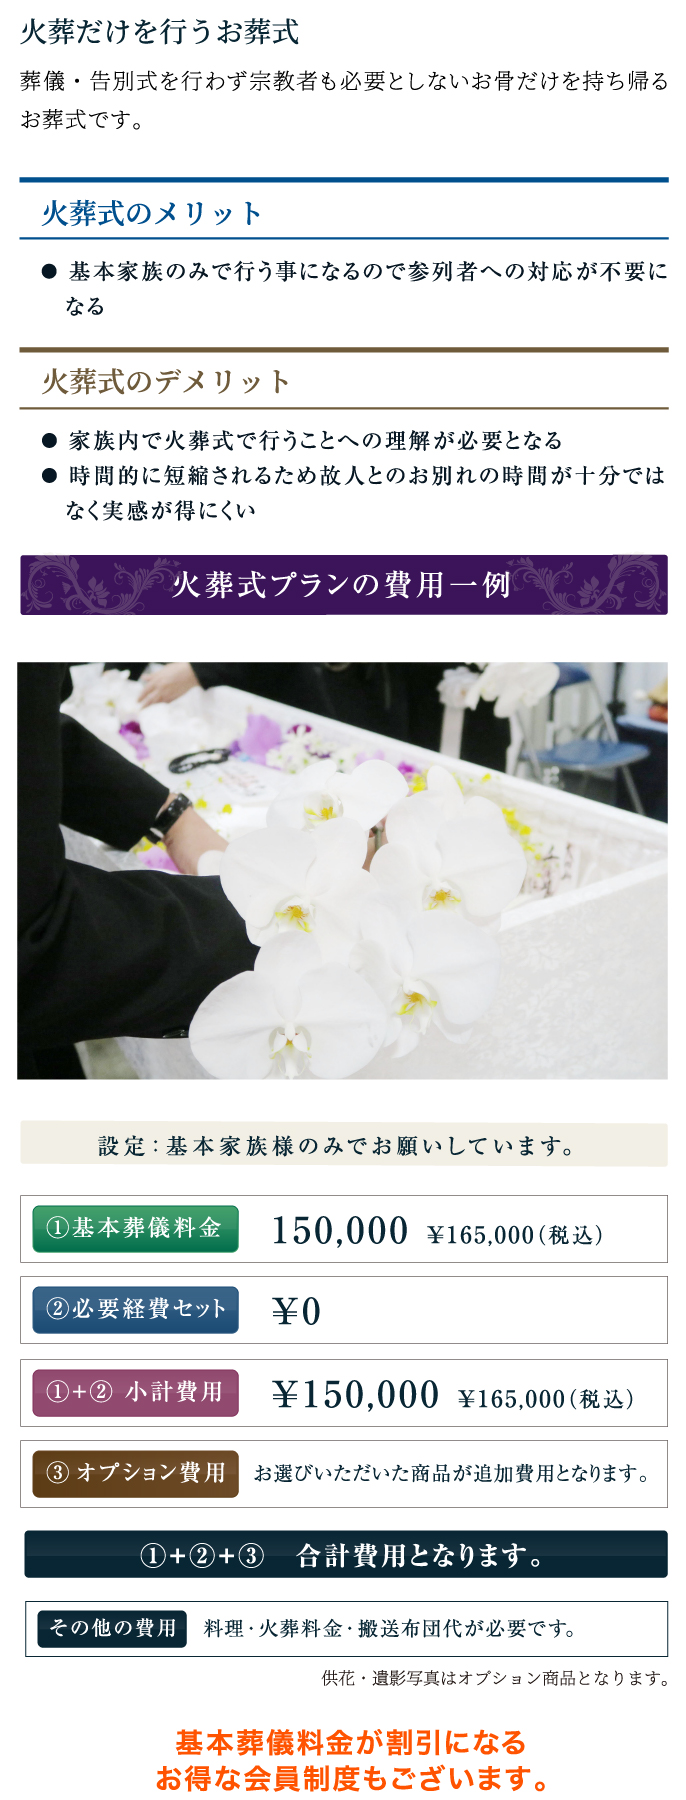 火葬だけを行うお葬式/火葬式プランの費用一例/基本葬儀料金/¥150,000/基本葬儀料金が割引になるお得な会員制度もございます